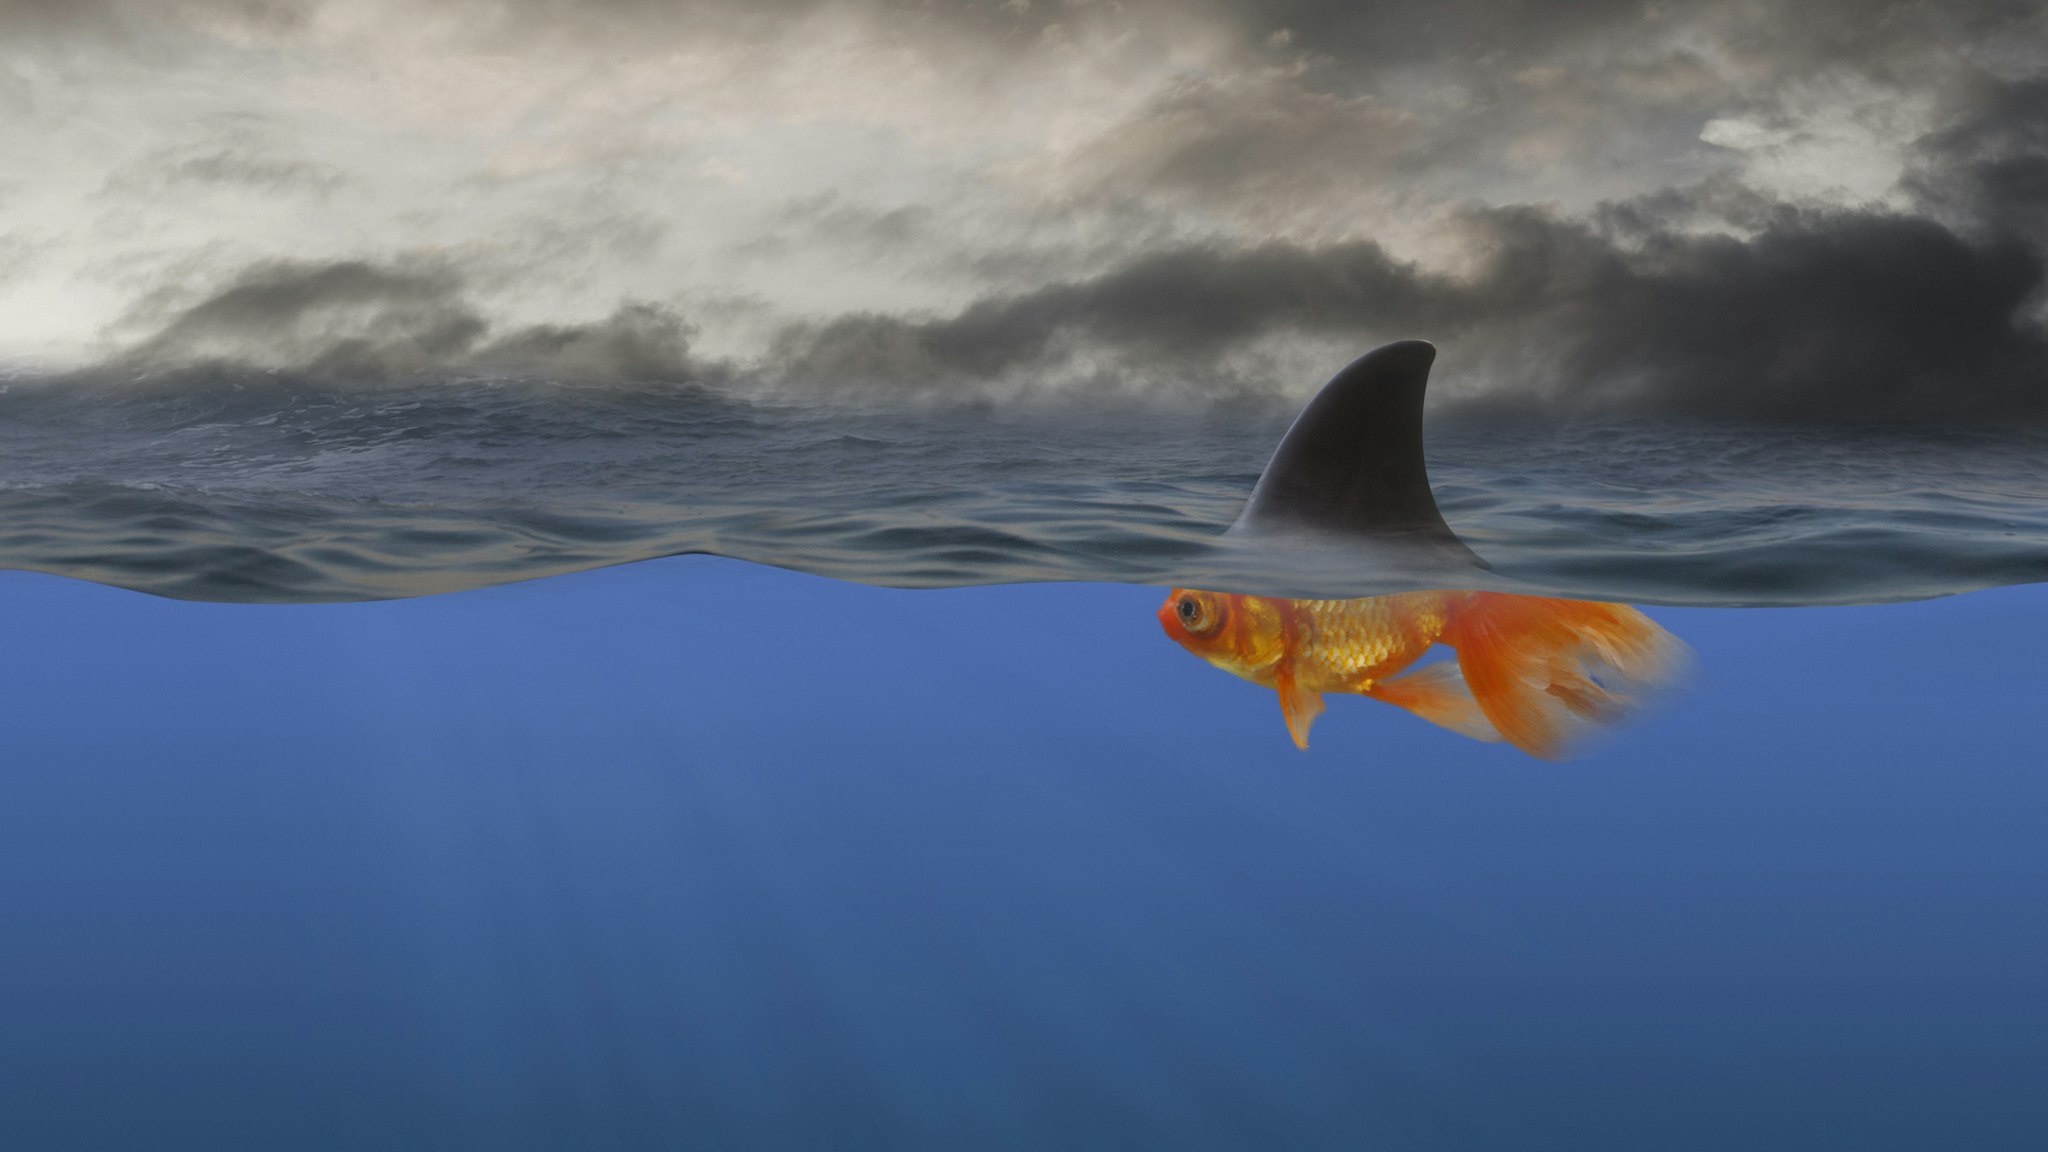 Goldfish with shark's fin swimming underwater - stock photo